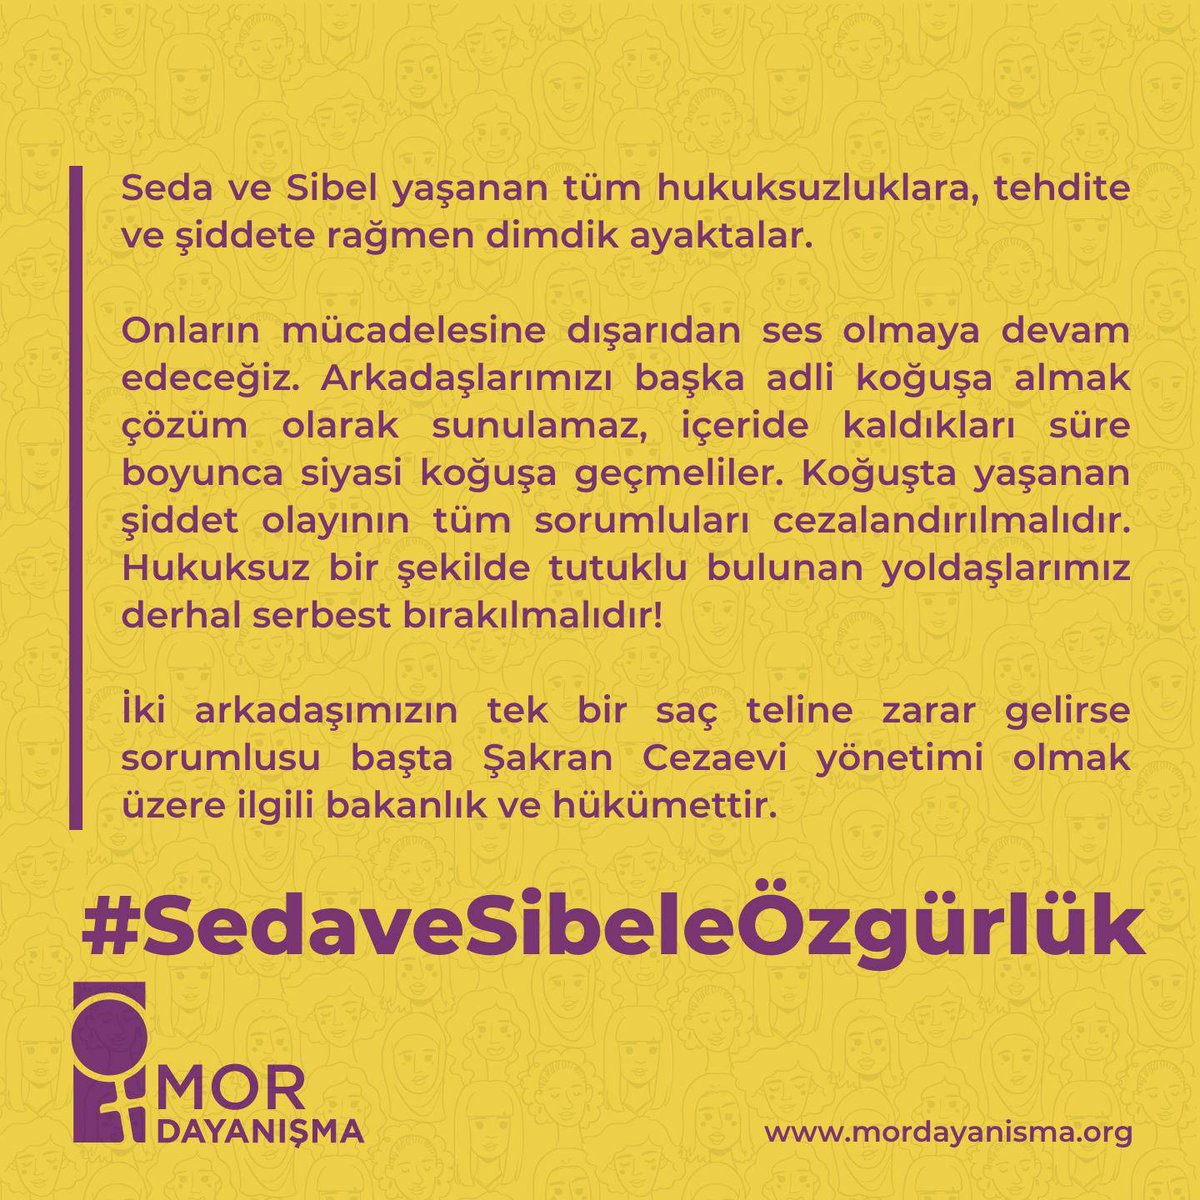 İzmir Mor Dayanışma üyemiz Sibel Örkmez ve mücadele arkadaşımız TÖP Çocuk Hakları Meclisi İzmir Sözcüsü Sedanur Uğur 3 Nisan'dan beri tutuldukları Şakran Cezaevinde saldırıya uğraması üzerine açıklamamız👇 #SedaveSibeleÖzgürlük